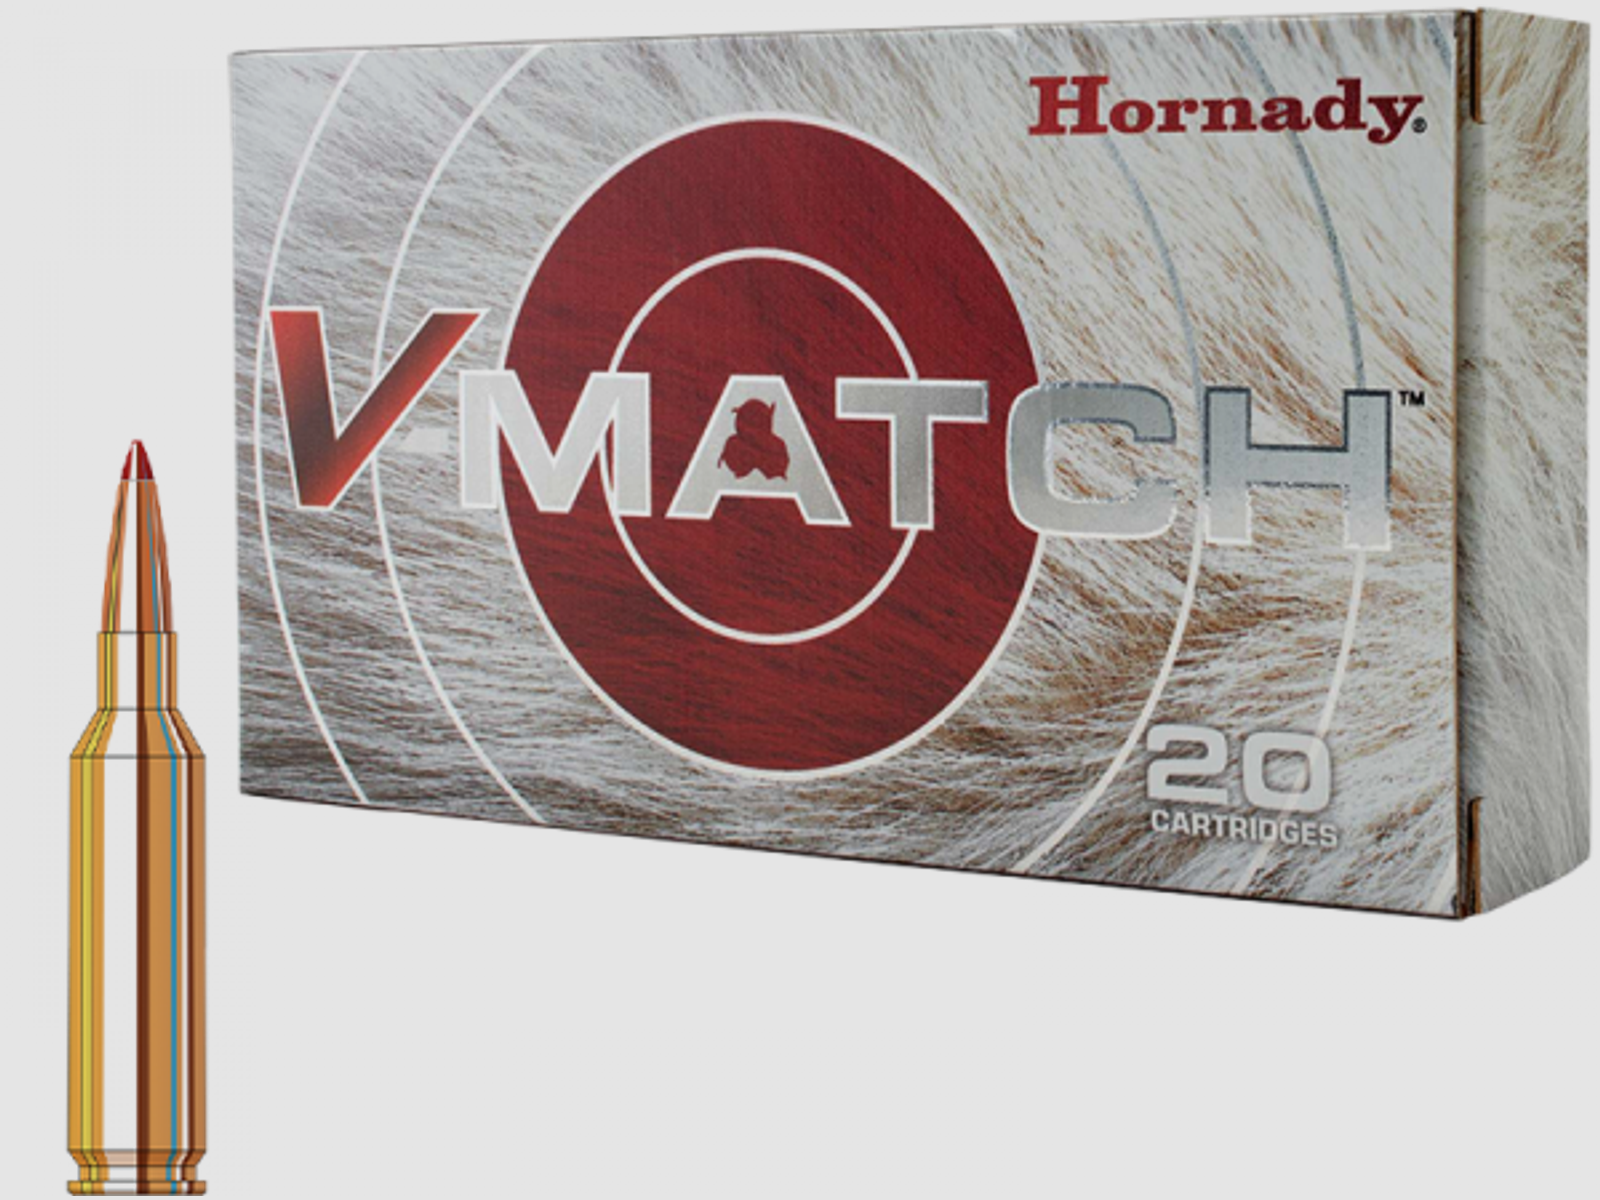 Hornady V-Match 6mm Creedmoor ELD-VT 80 grs Büchsenpatronen